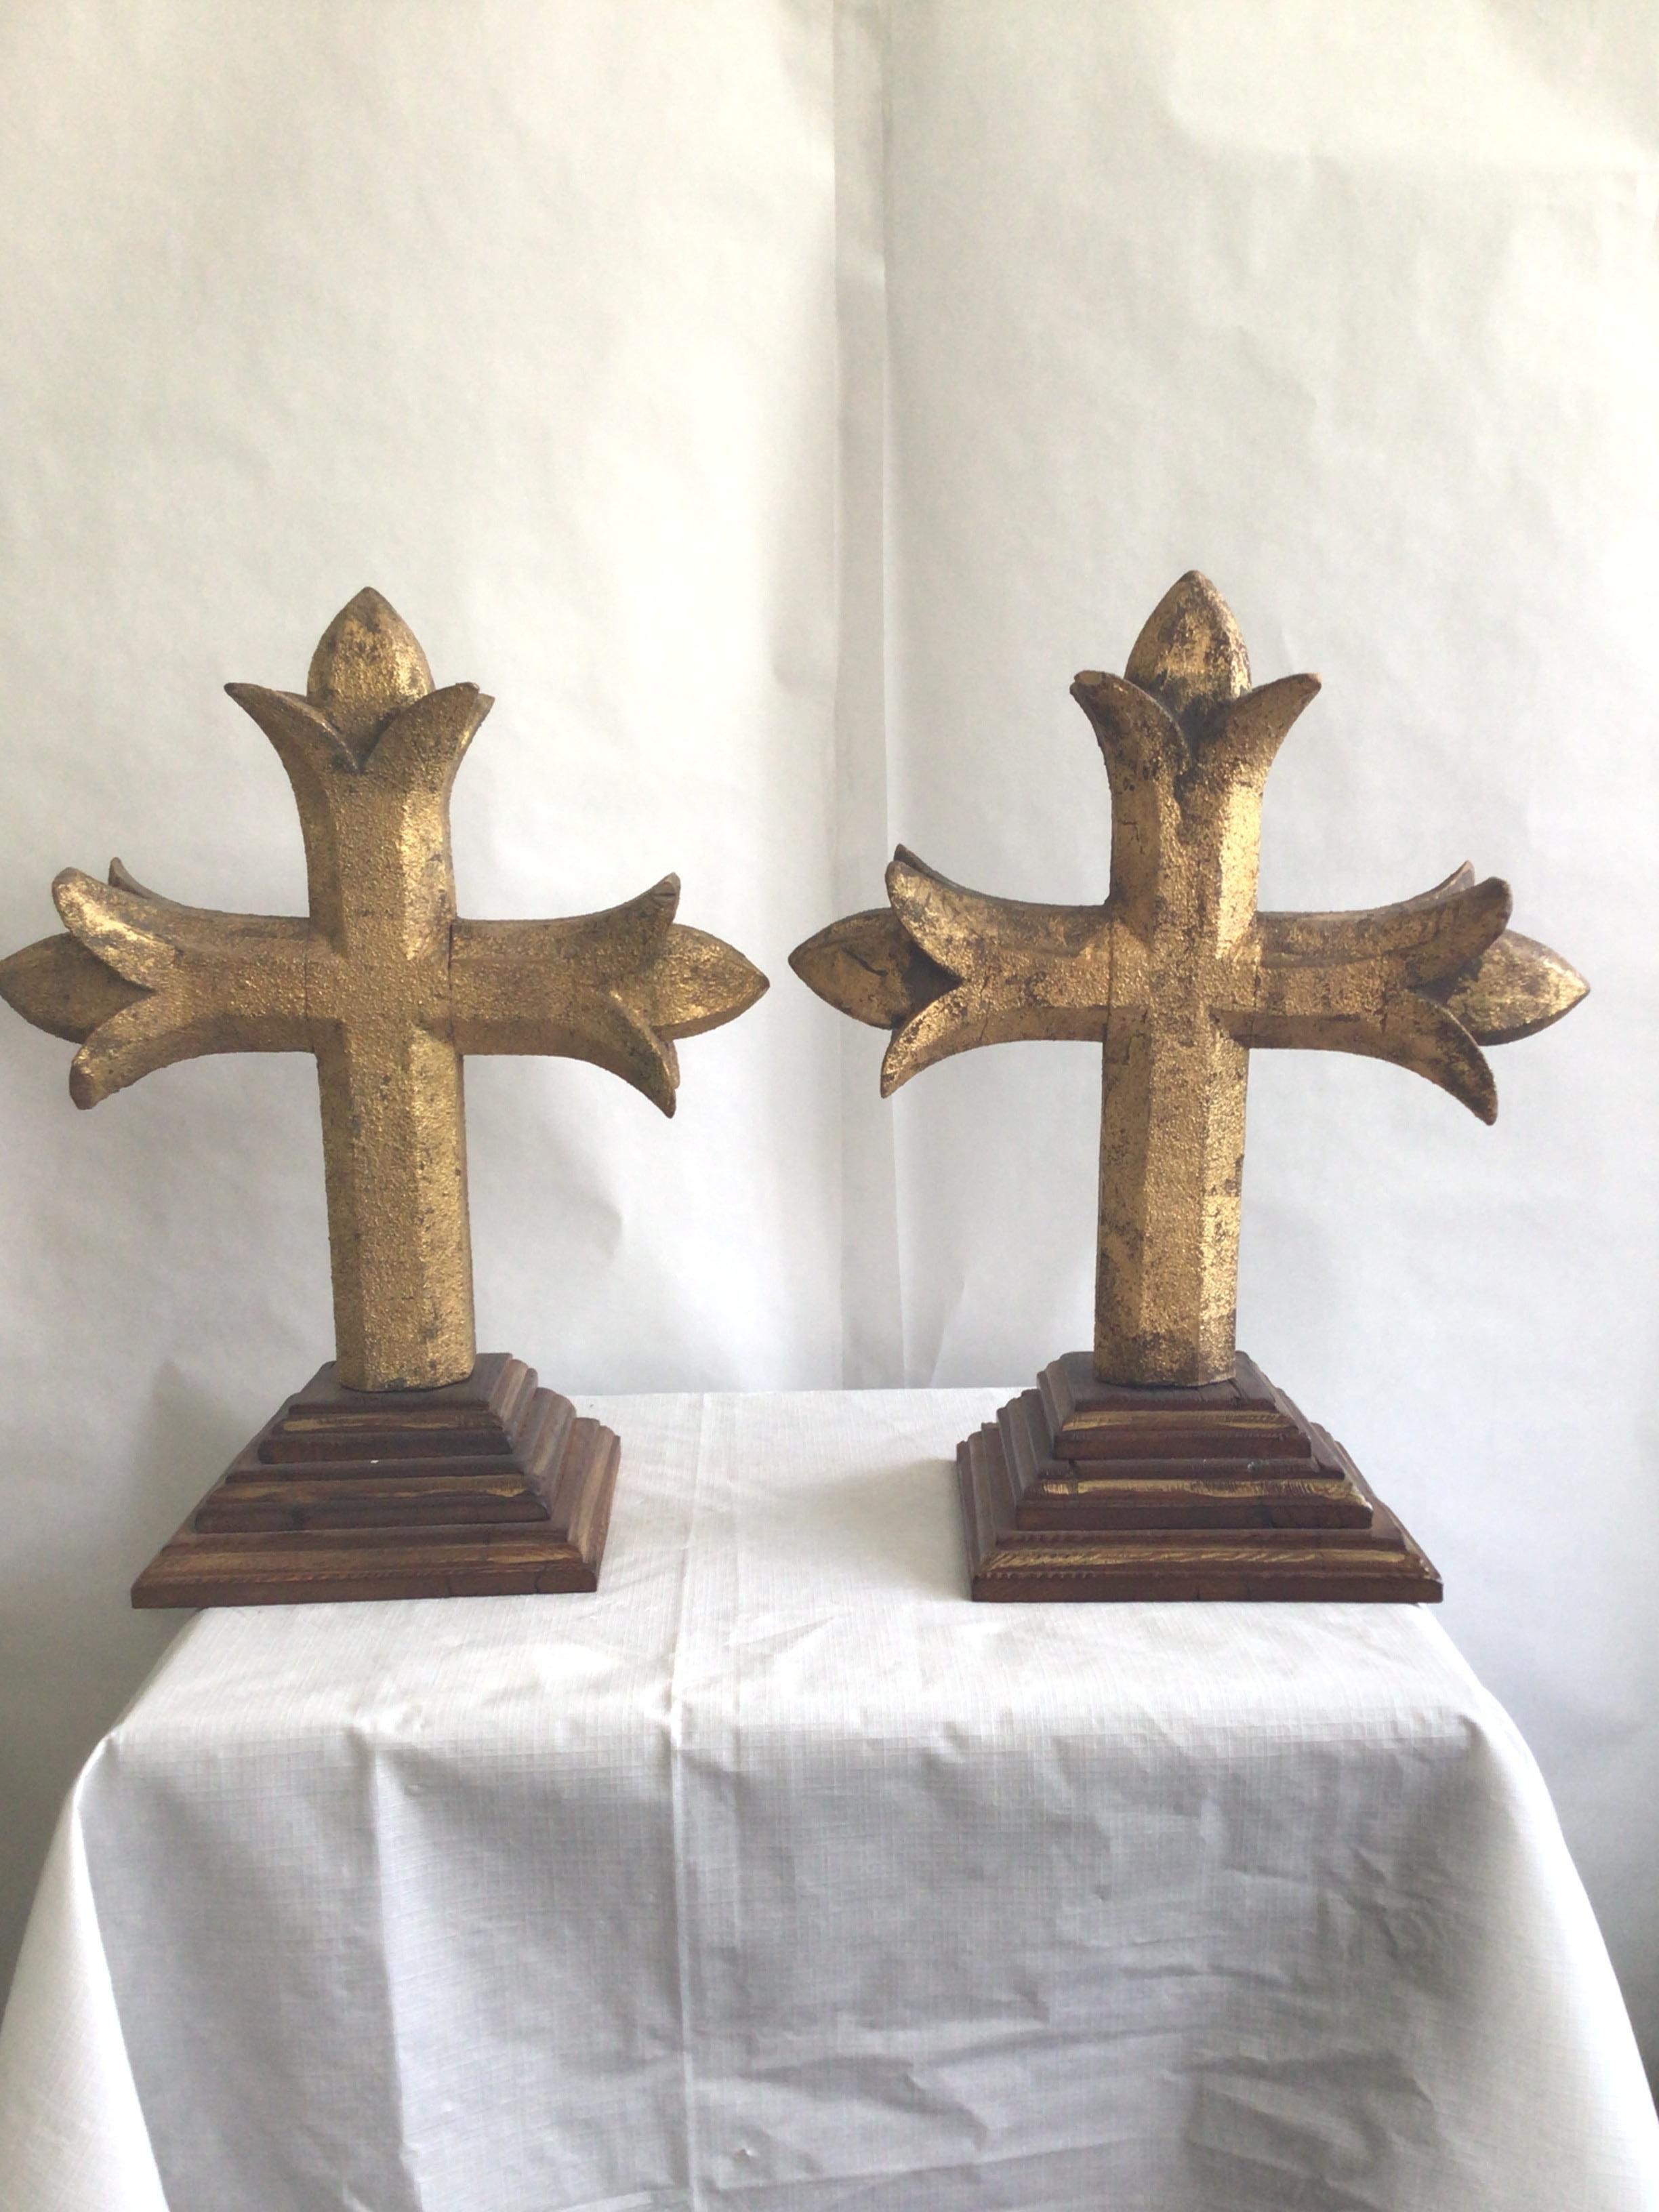 Paar geschnitzte vergoldete Kreuze aus den 1880er Jahren auf einem Holzsockel
Verlust der Vergoldung von Kreuzen
PREIS PRO ARTIKEL (pro Stück) 